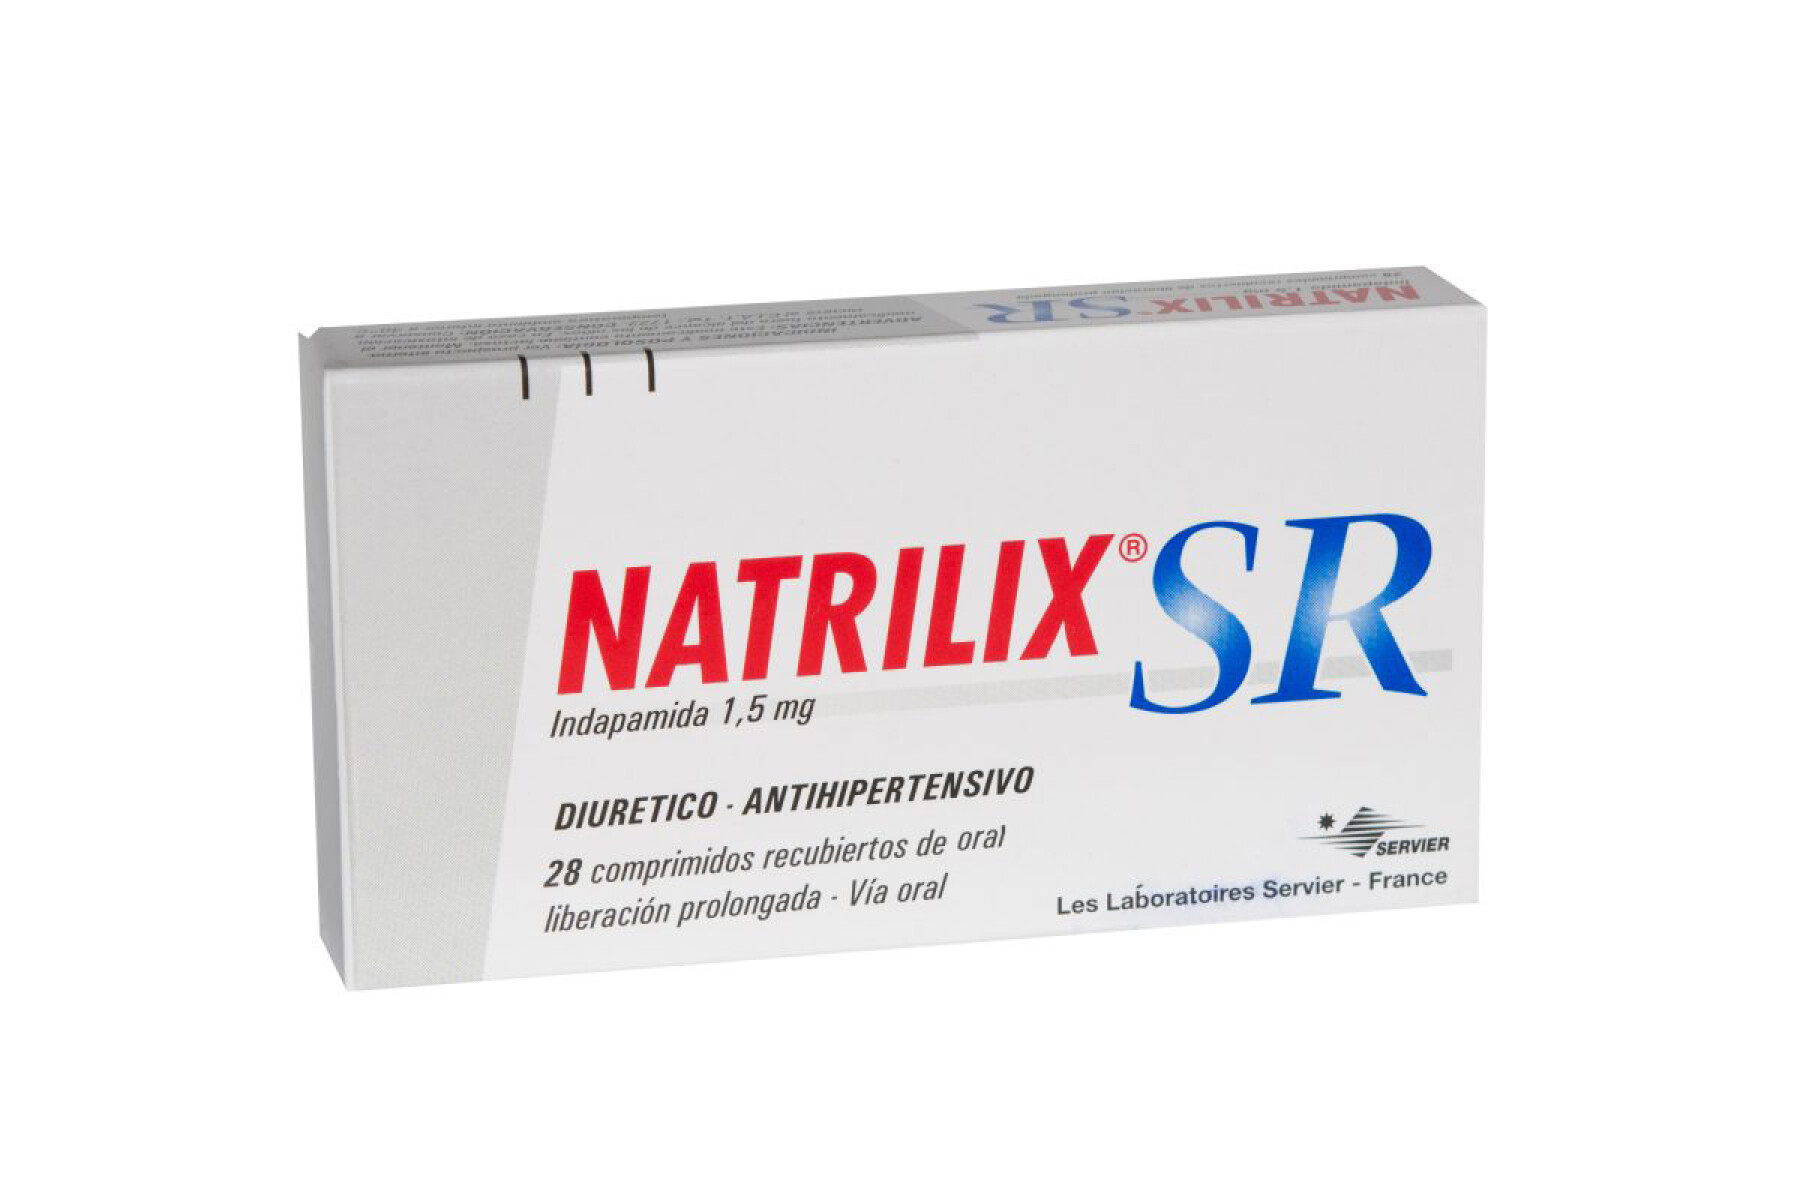 Natrilix Sr 1.5Mg 